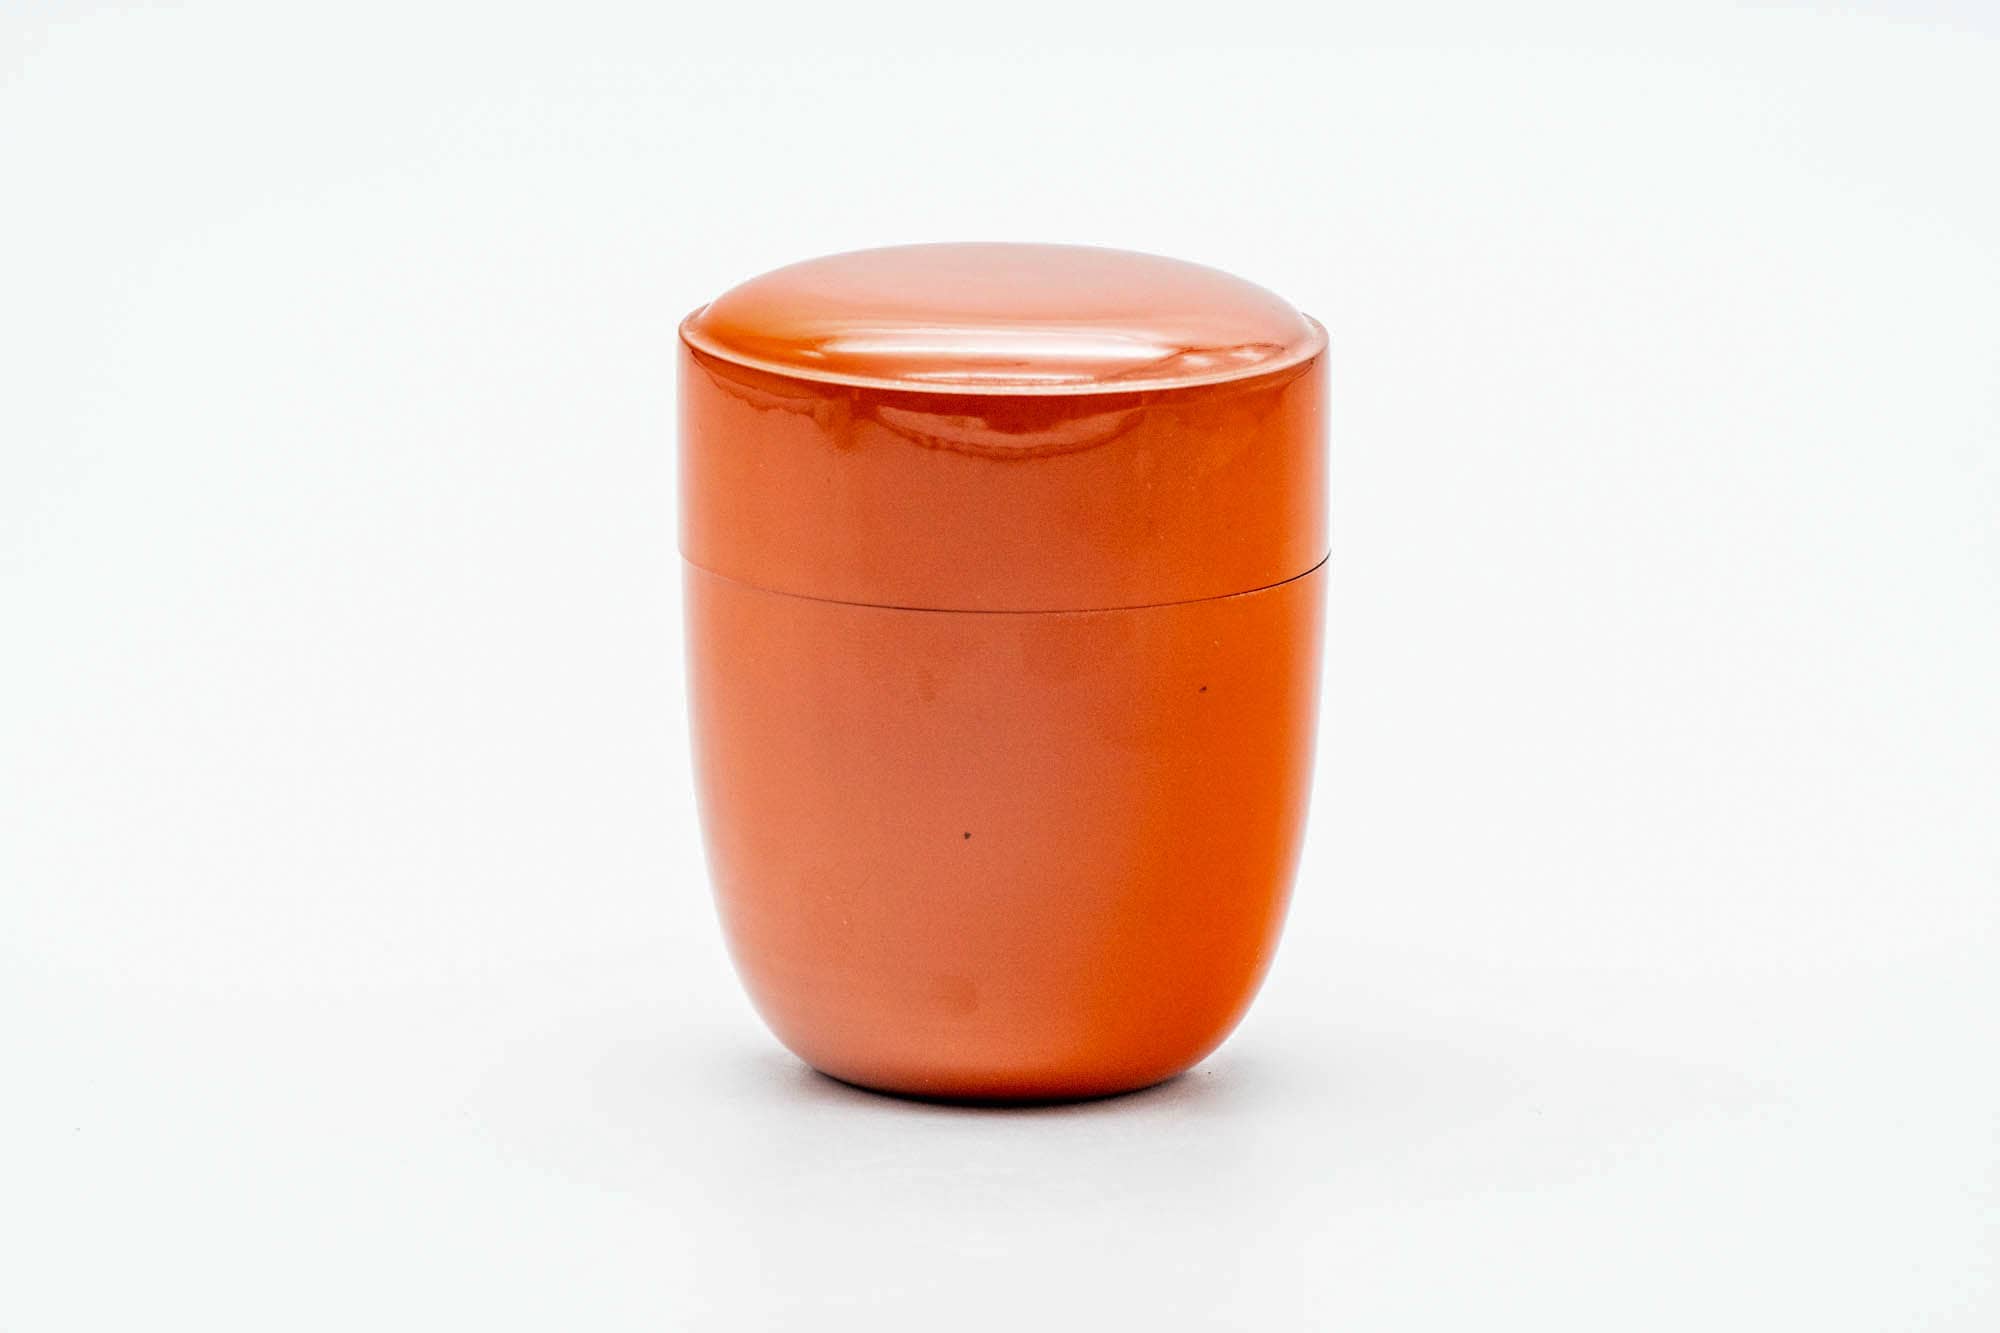 Japanese Natsume - Sleek Orange Black Urushi Lacquer Matcha Tea Caddy - 110ml